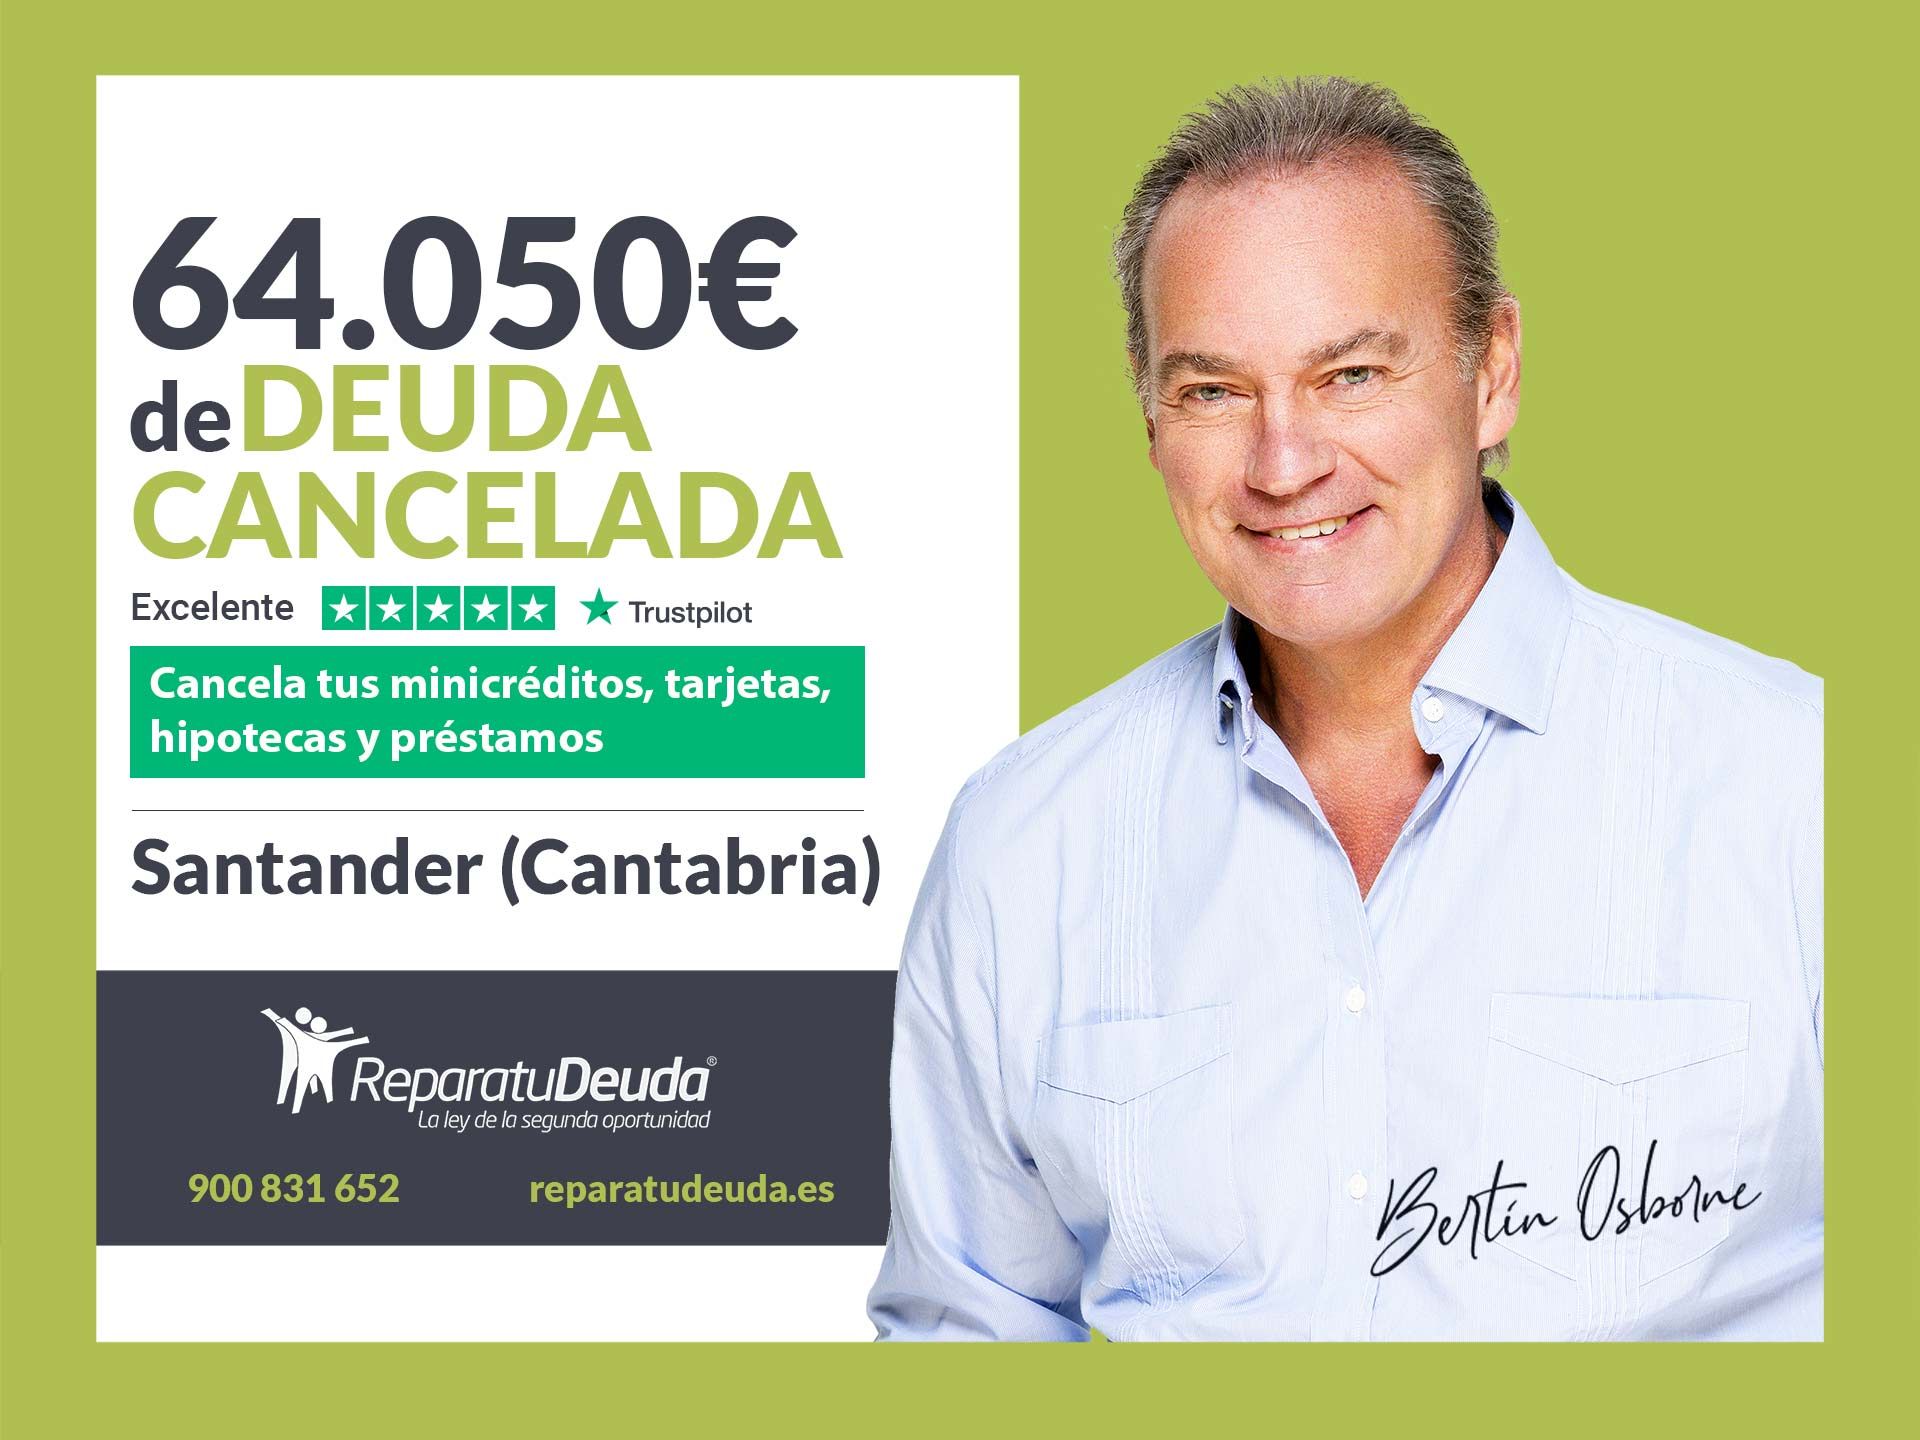 Repara tu Deuda Abogados cancela 64.050? en Santander (Cantabria) con la Ley de Segunda Oportunidad